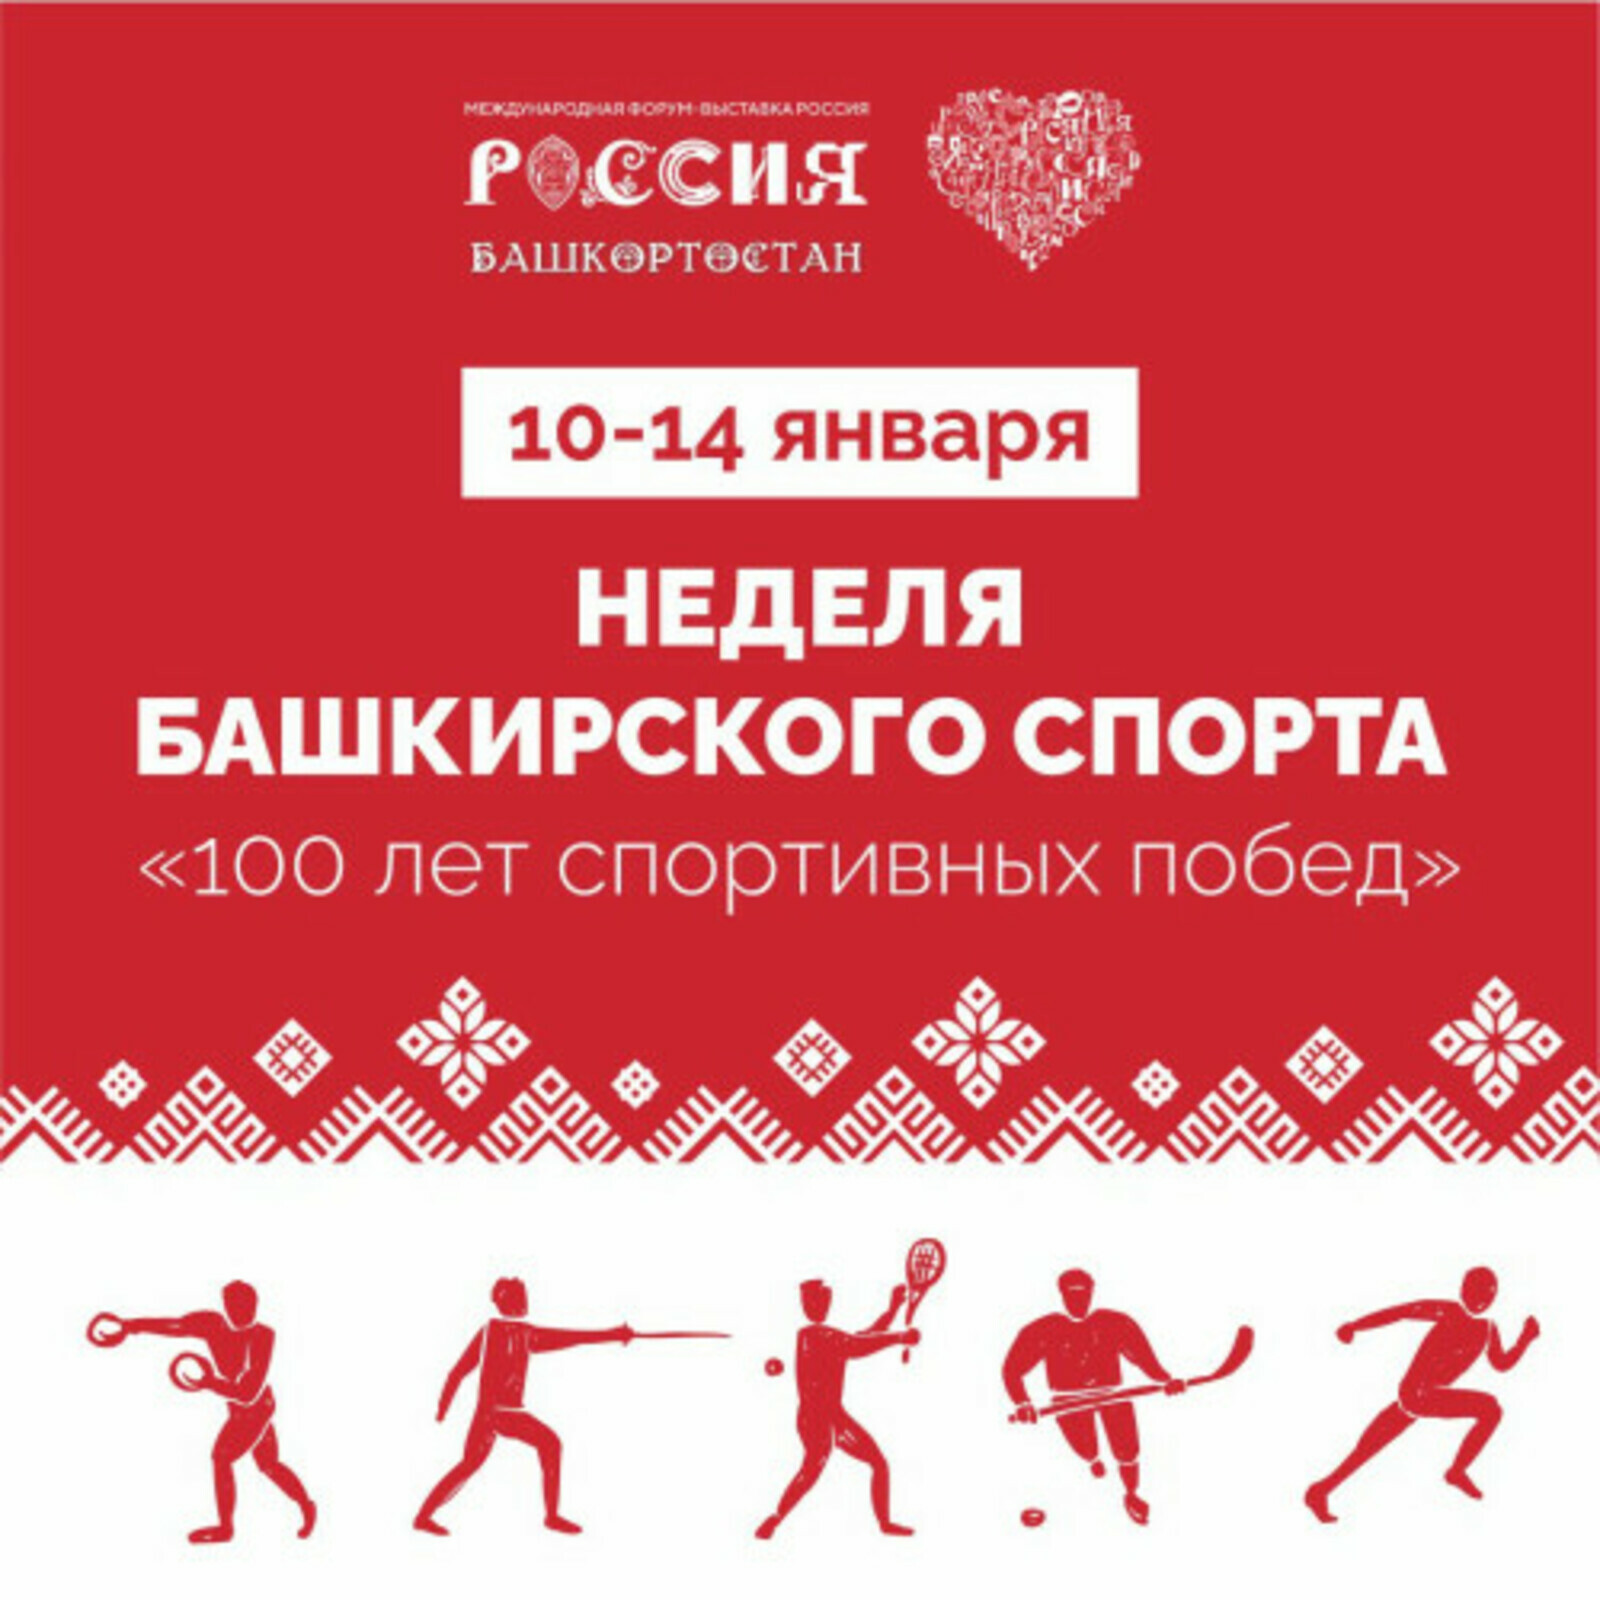 Мәскәүҙә Башҡортостан спорты аҙналығы үтә